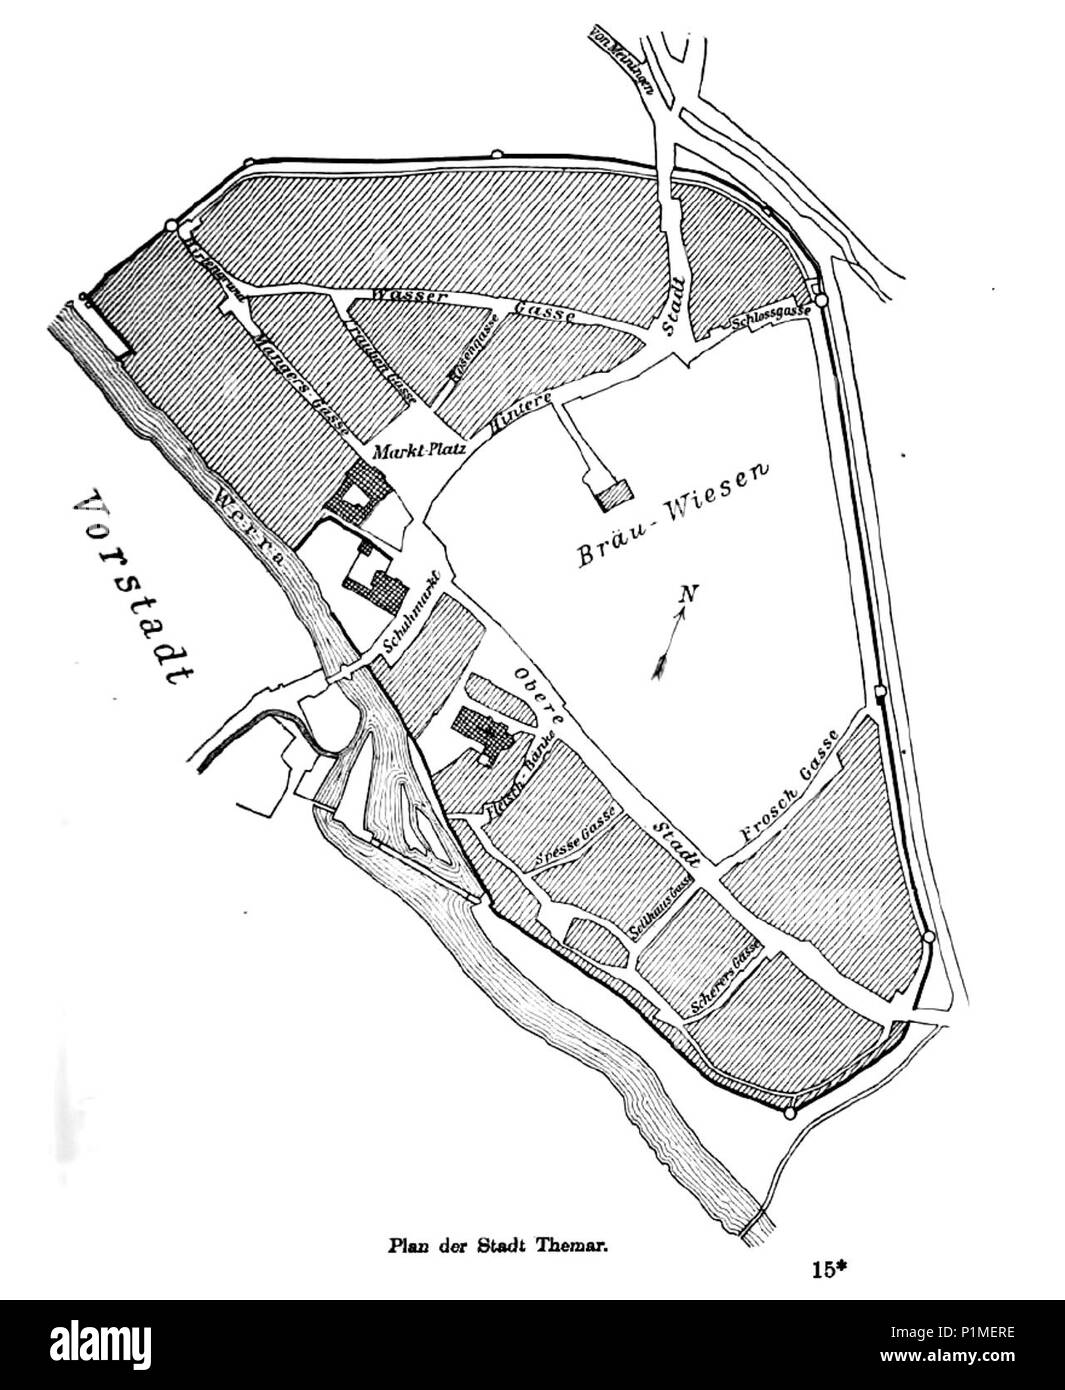 (1903) Plan der Stadt Themar im 19. Jahrhundert Banque D'Images